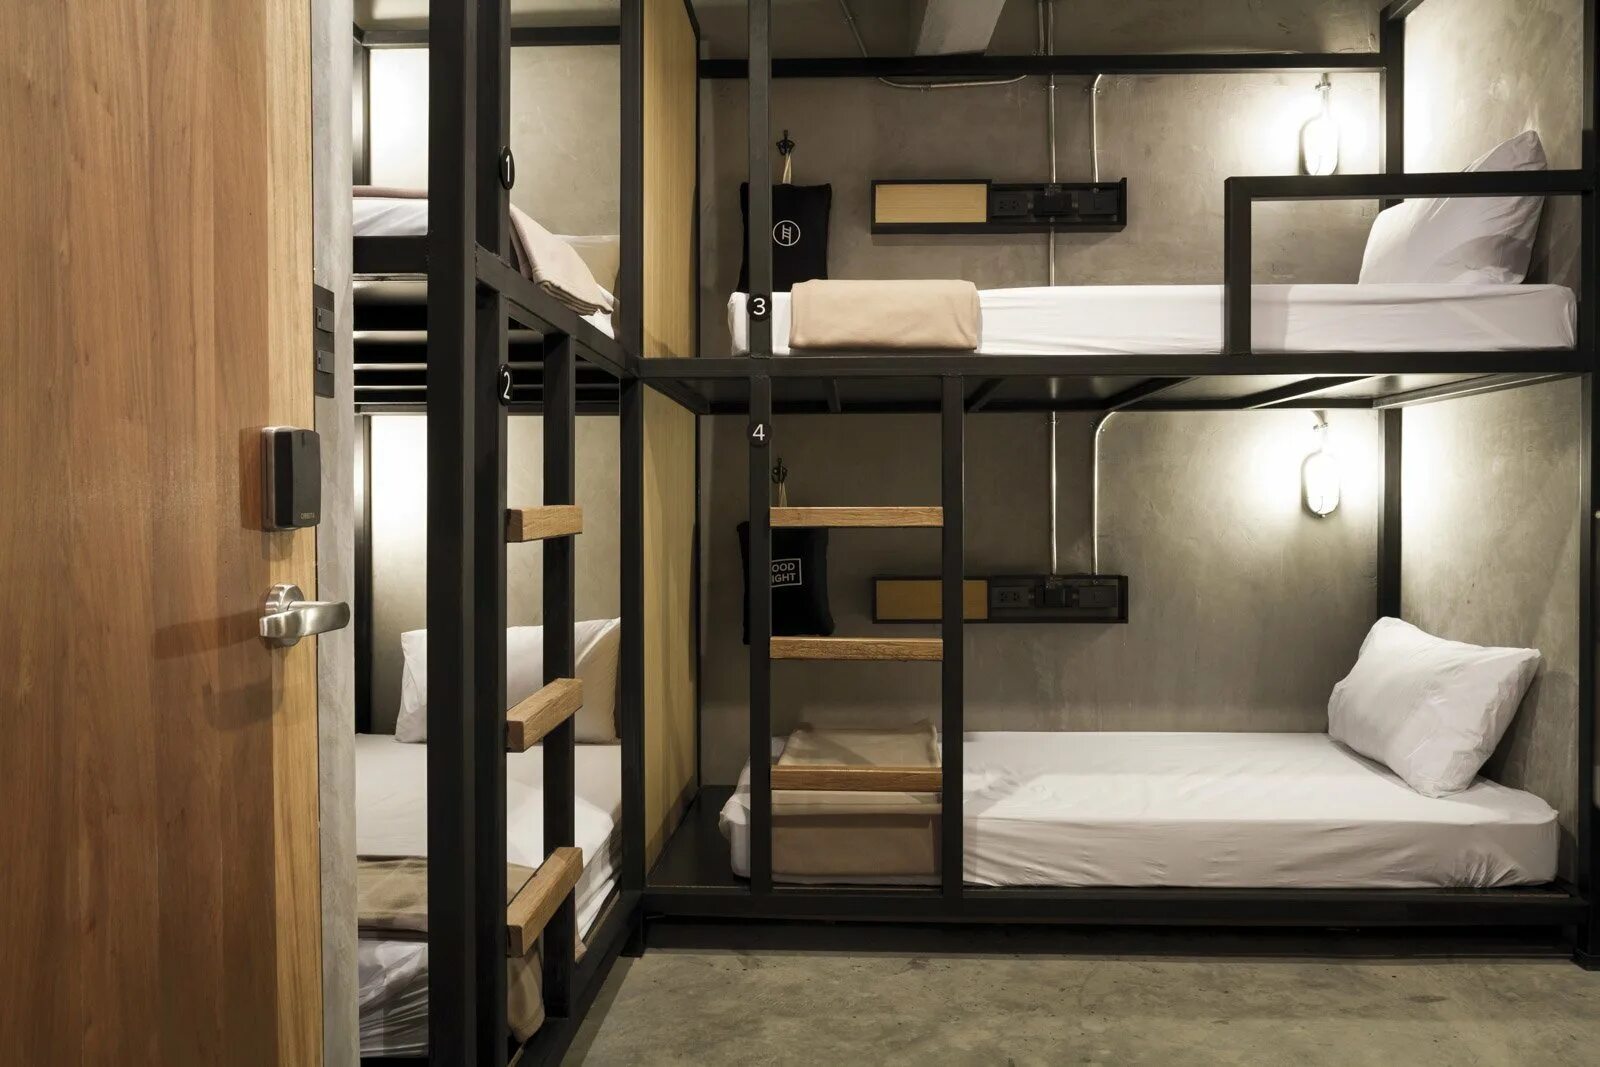 Кровать двухъярусная хостел. Двухъярусная кровать для хостела. Комната с двухъярусной кроватью хостел. Двухэтажные кровати в хостеле.